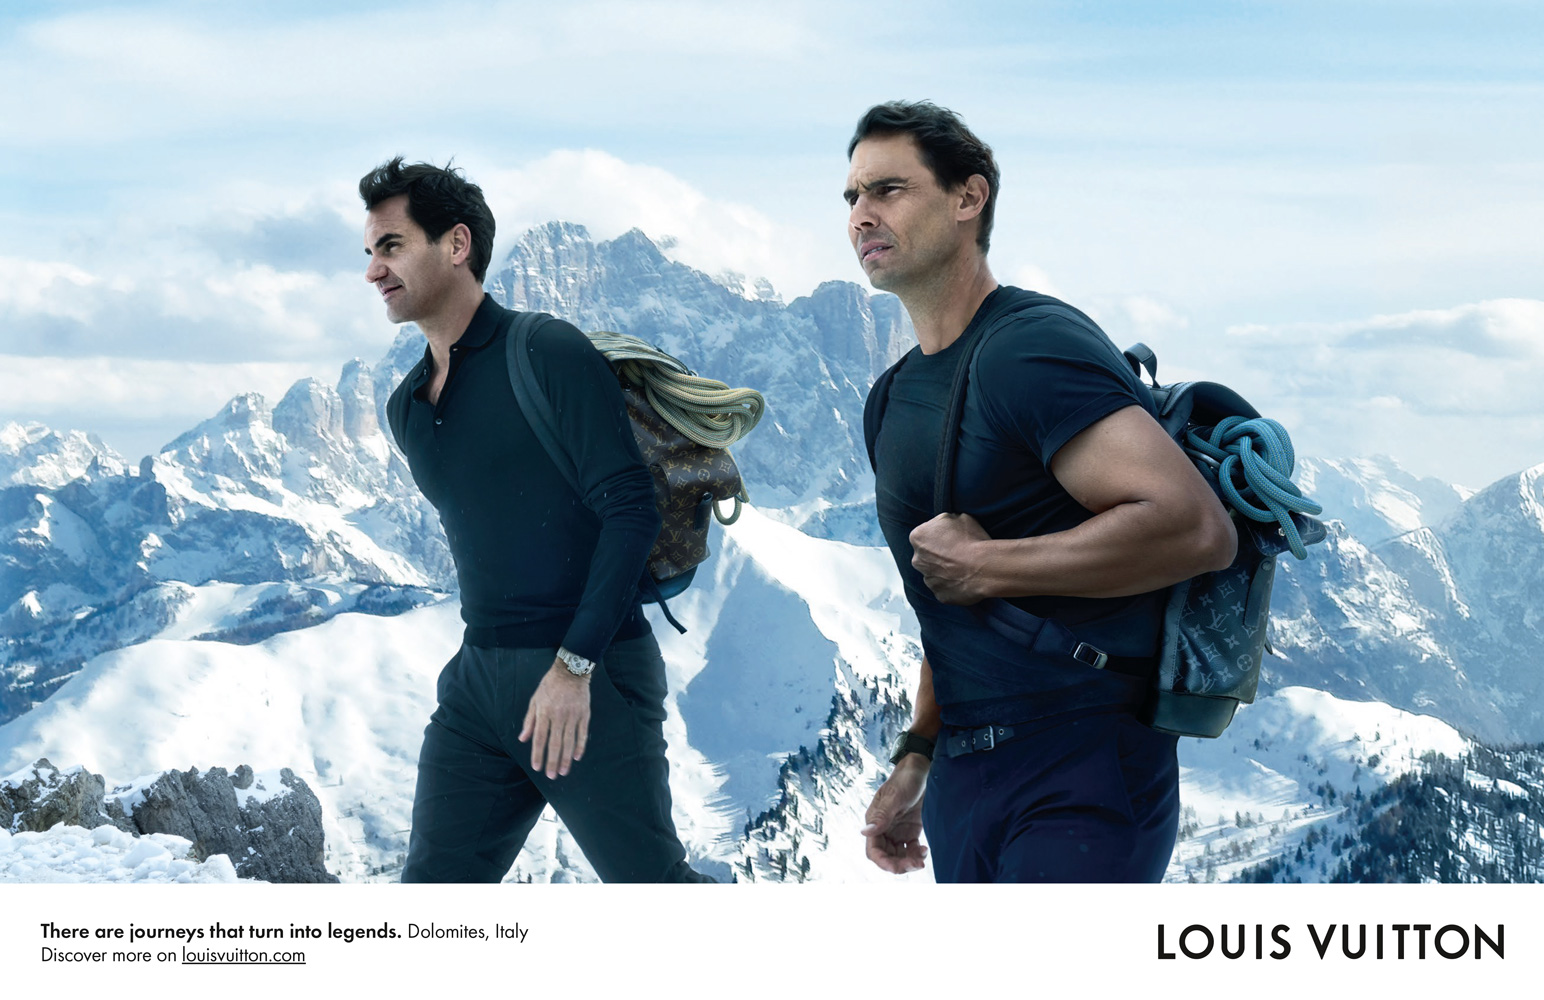 Louis Vuitton Kembali Dengan Kampanye Terbaru “Core Values” yang Dibintangi oleh Roger Federer dan Rafael Nadal